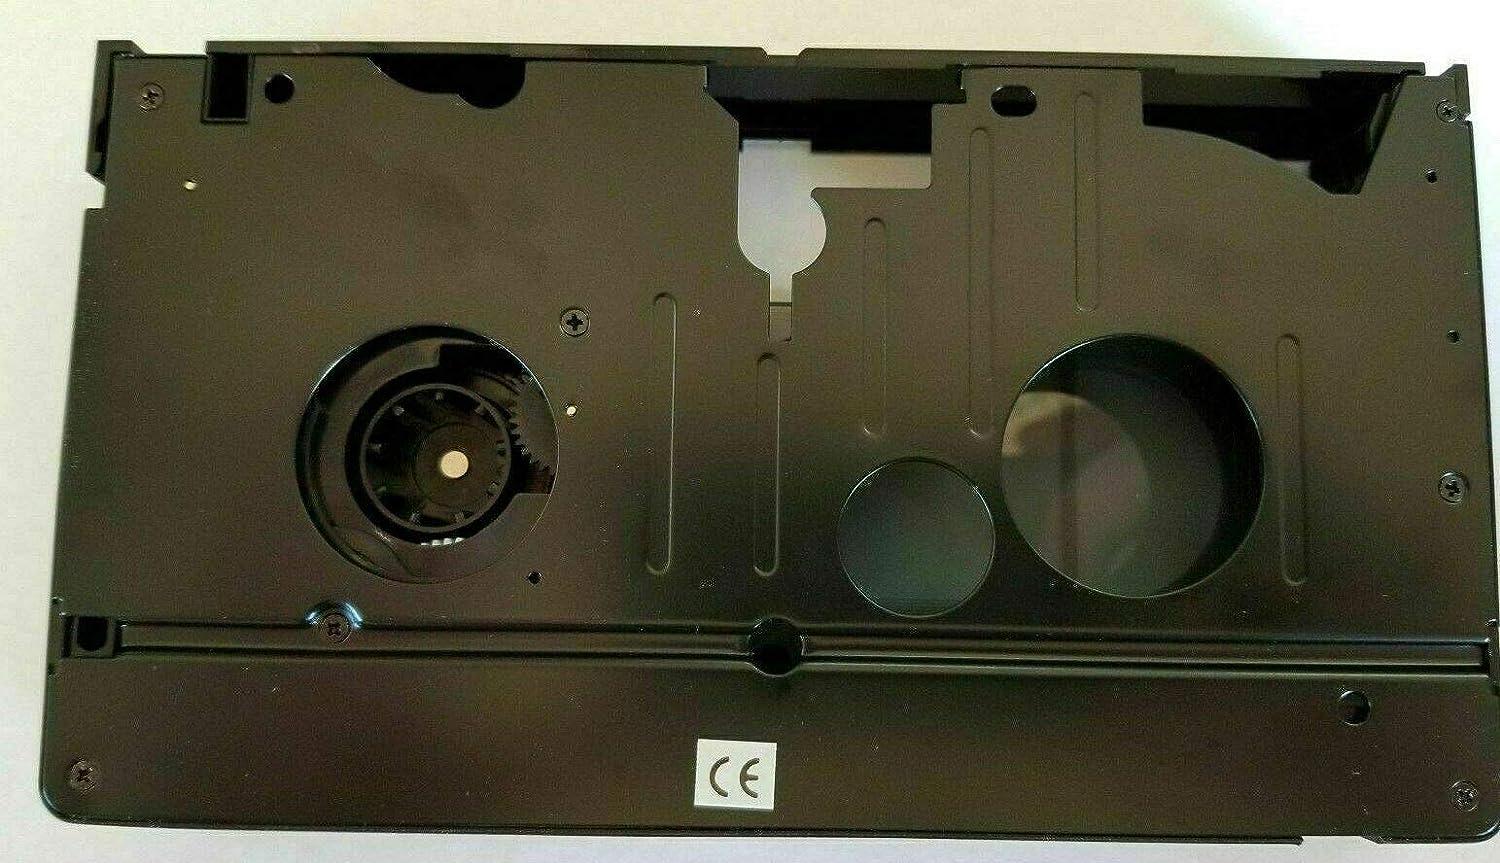 Adaptateur cassette 8mm